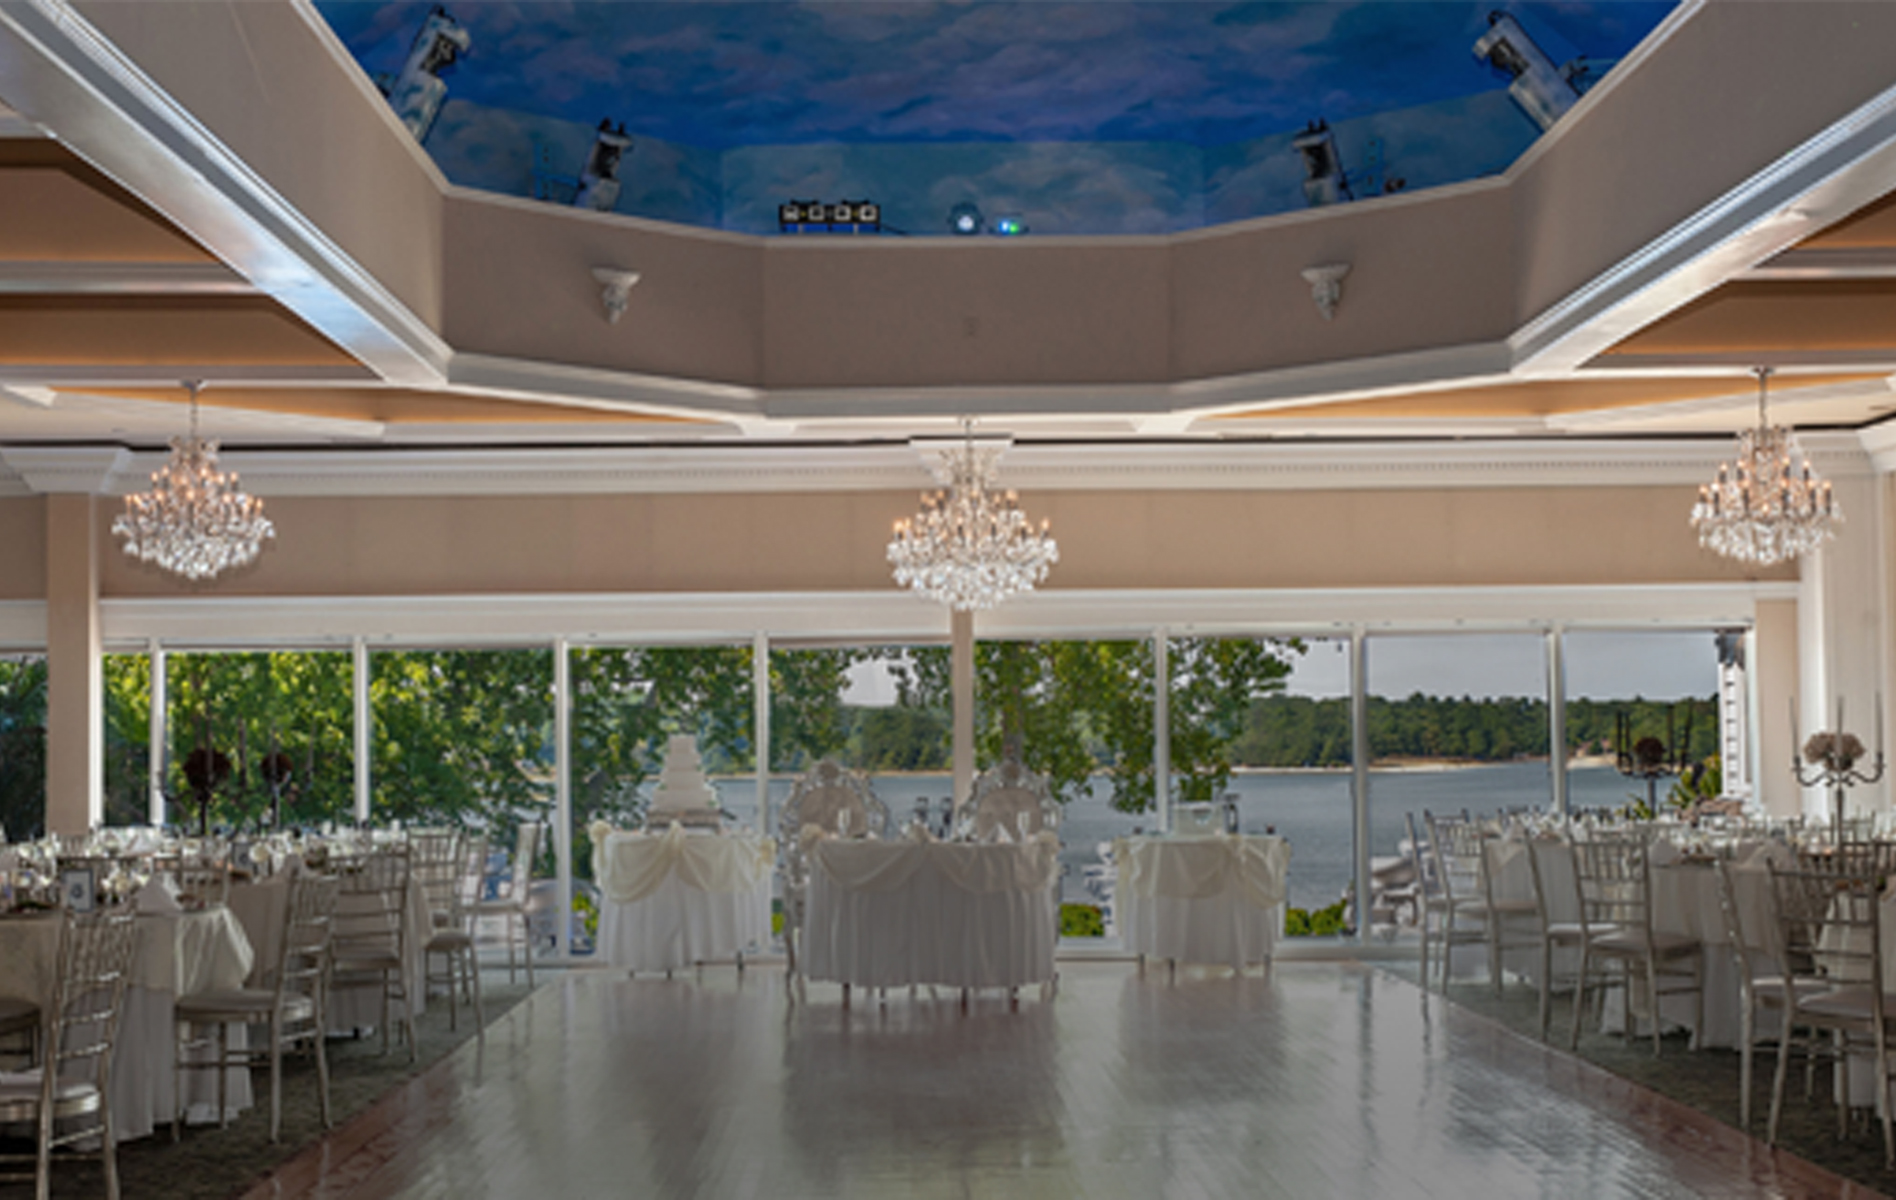 Wedding Venue Ballroom daytime – retouched 1-10-23 – 1800 resized